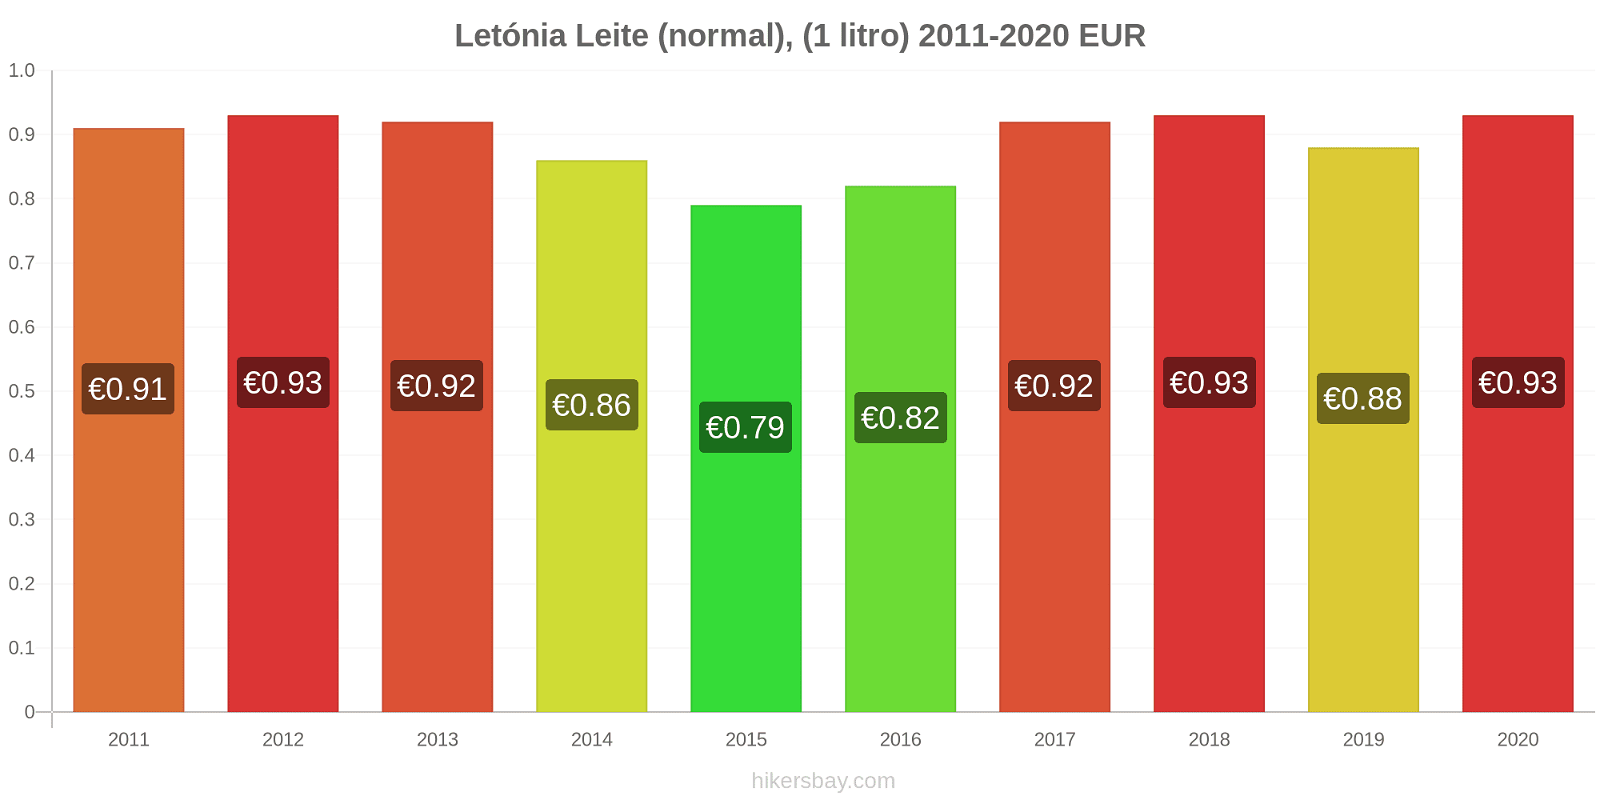 Letónia variação de preço (Regular), leite (1 litro) hikersbay.com